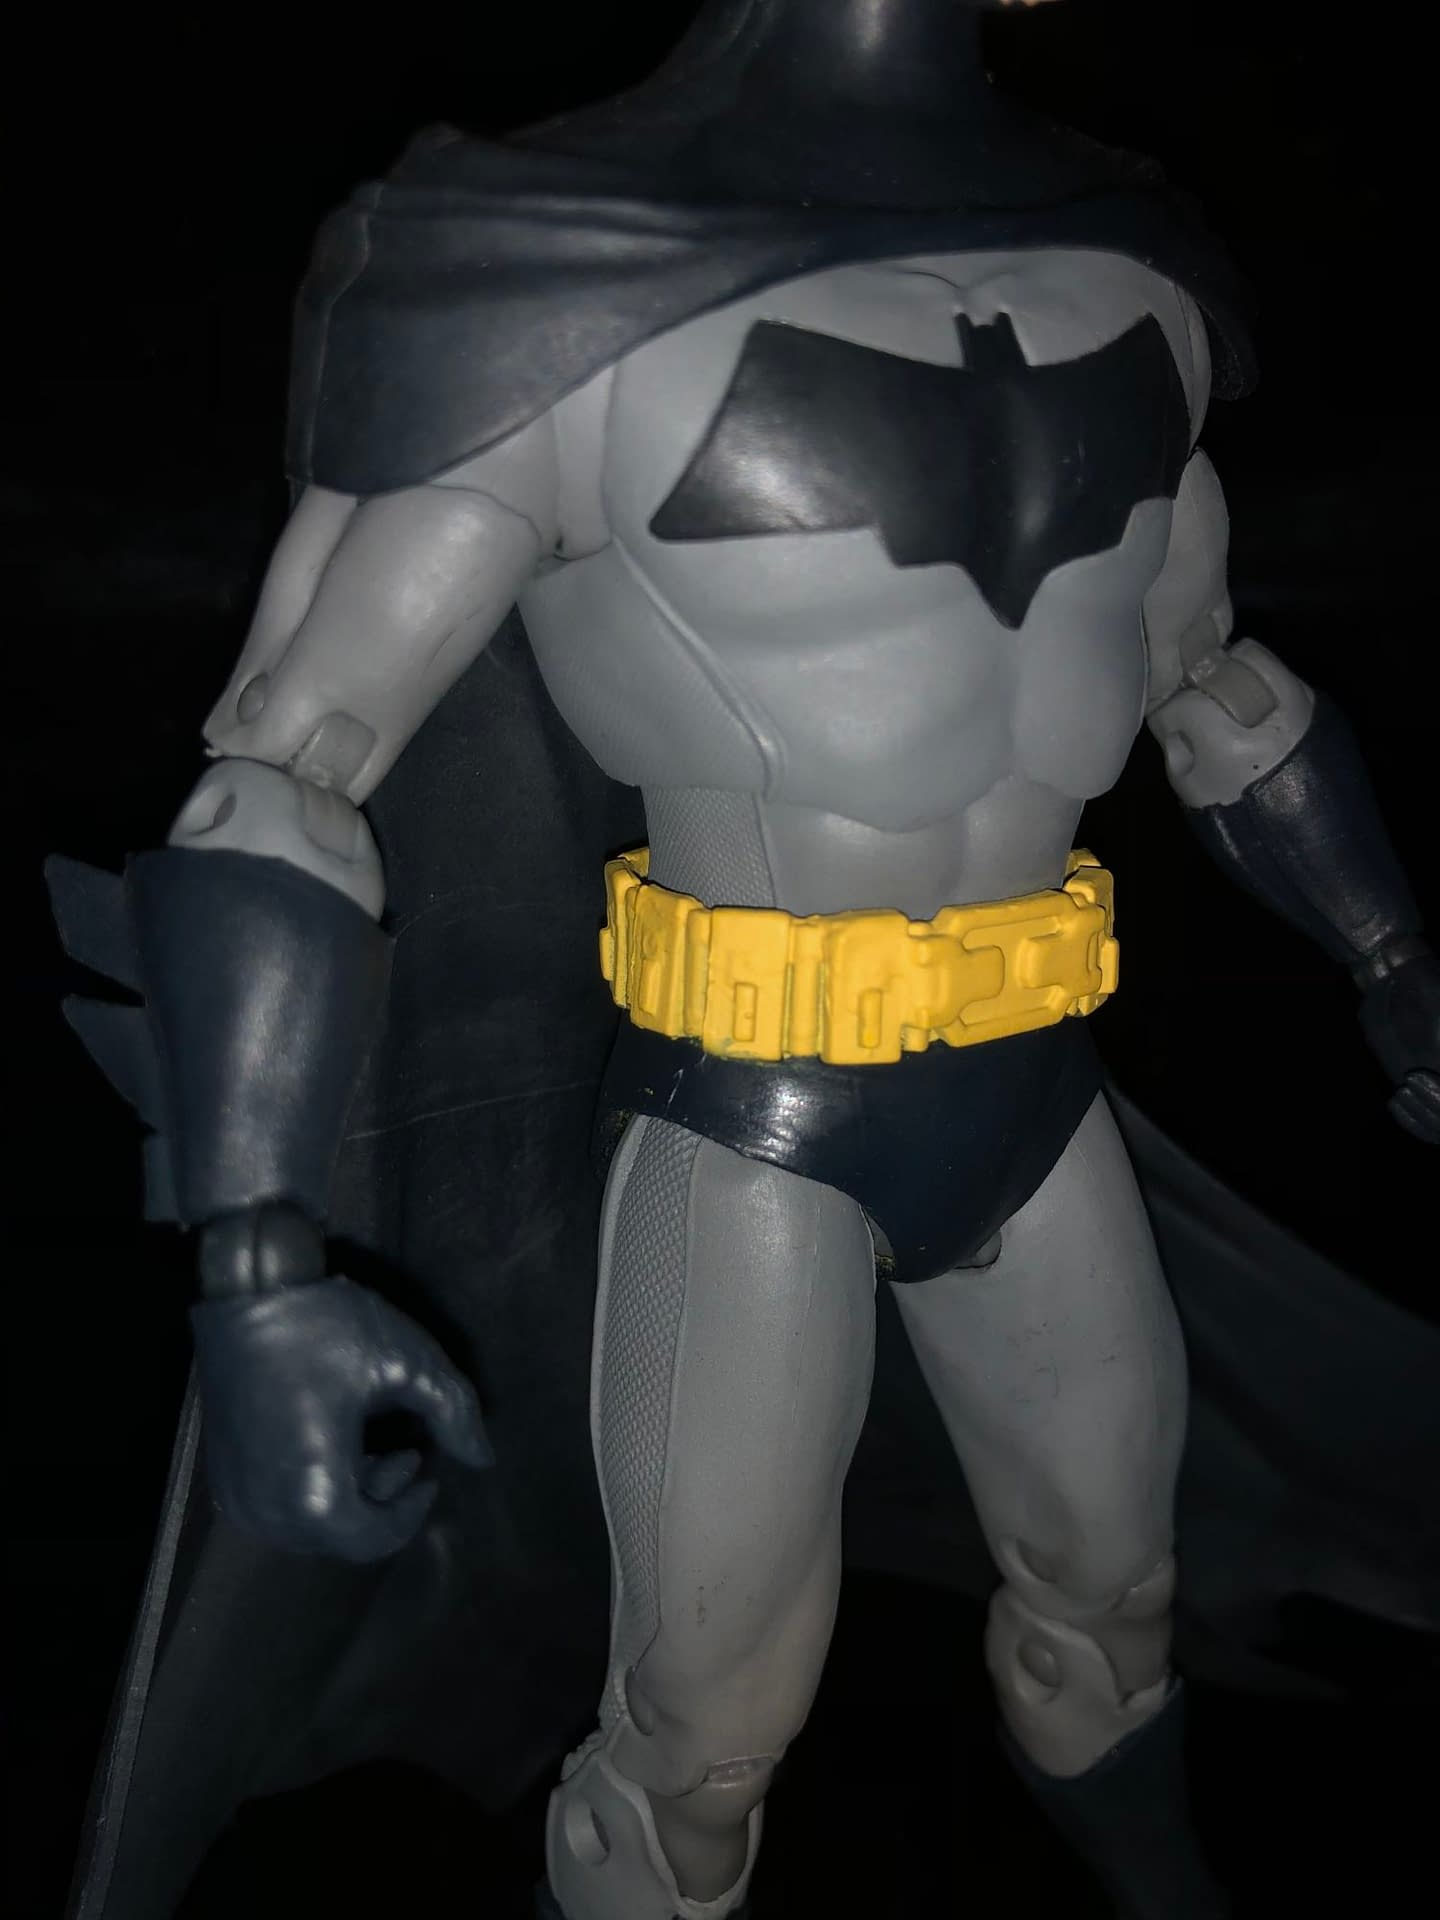 Batman McFarlane Toys Review Figure